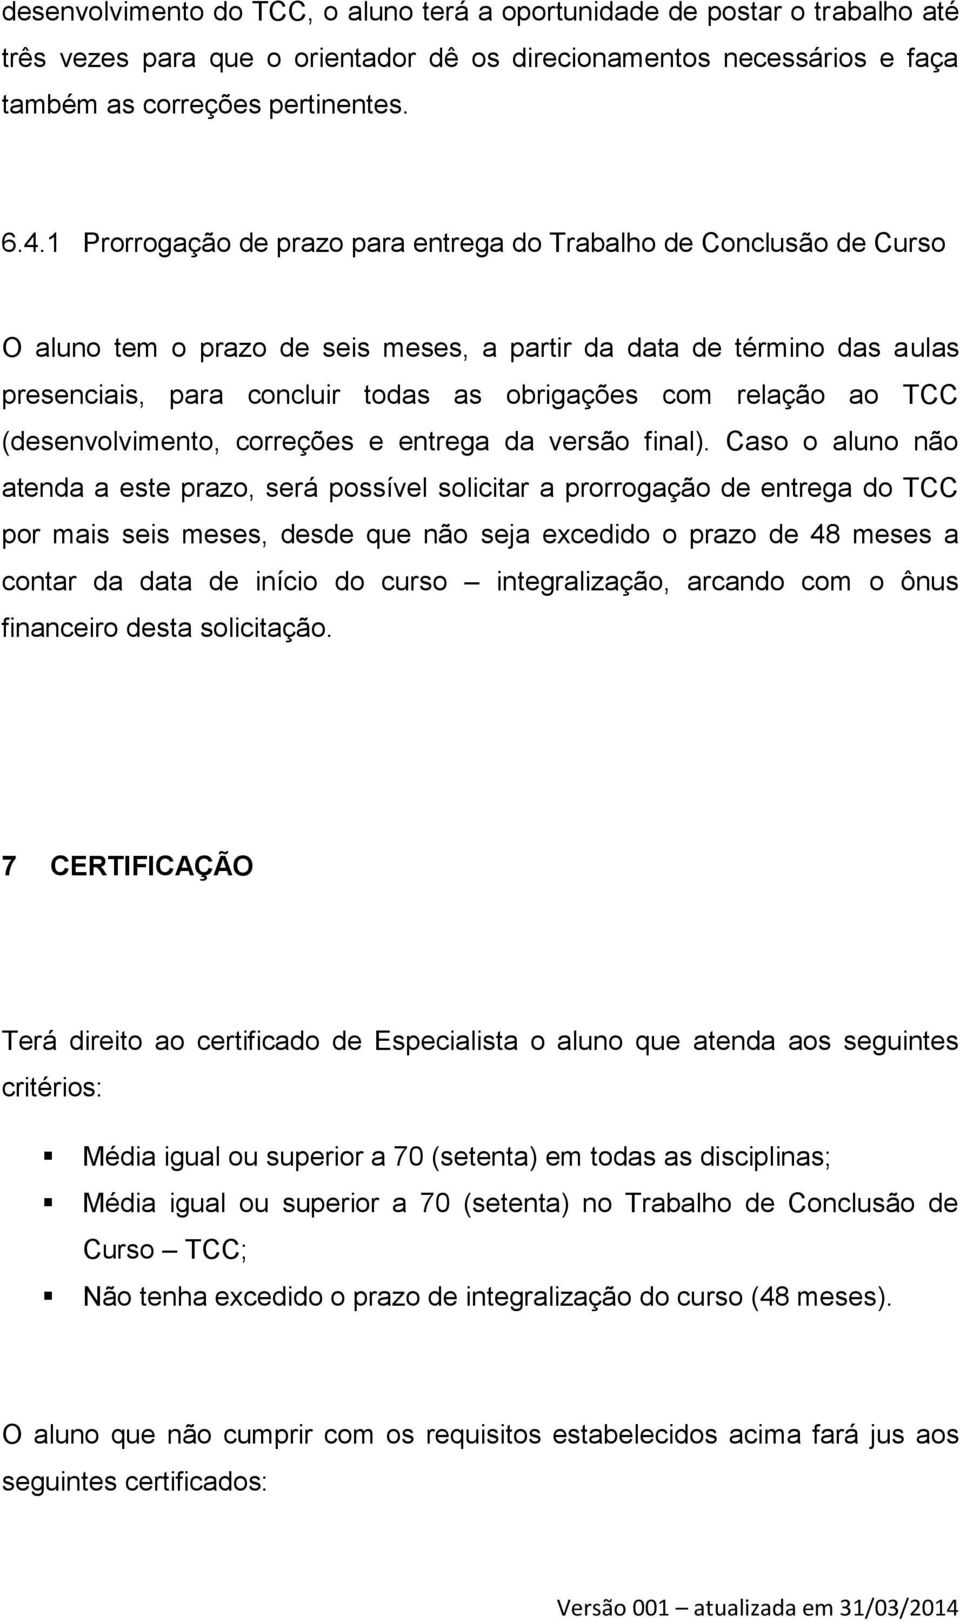 relação ao TCC (desenvolvimento, correções e entrega da versão final).